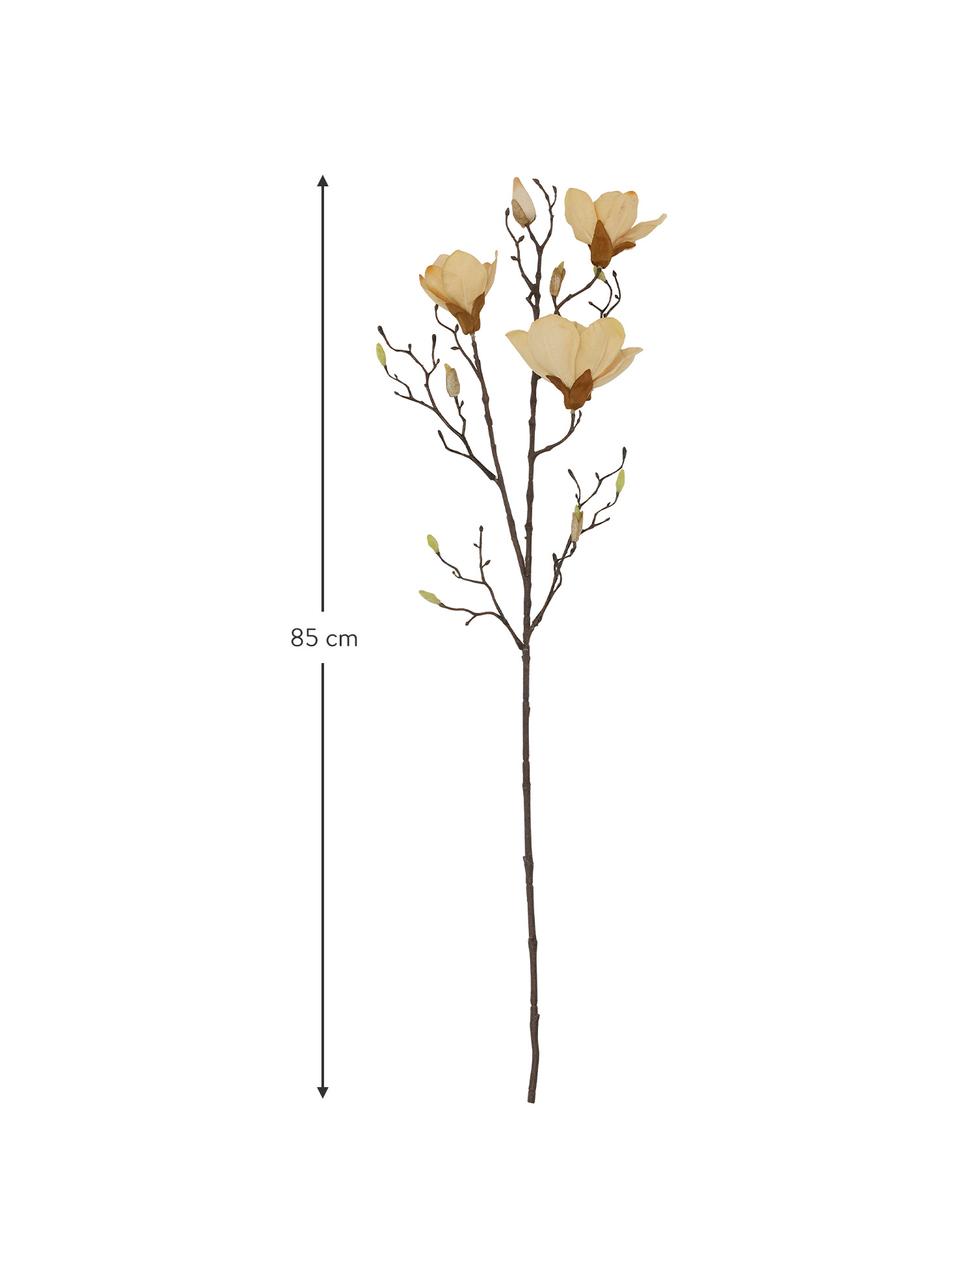 Květinová dekorace Magnolia, Umělá hmota (PVC), ocelový drát, Béžová, hnědá, D 85 cm